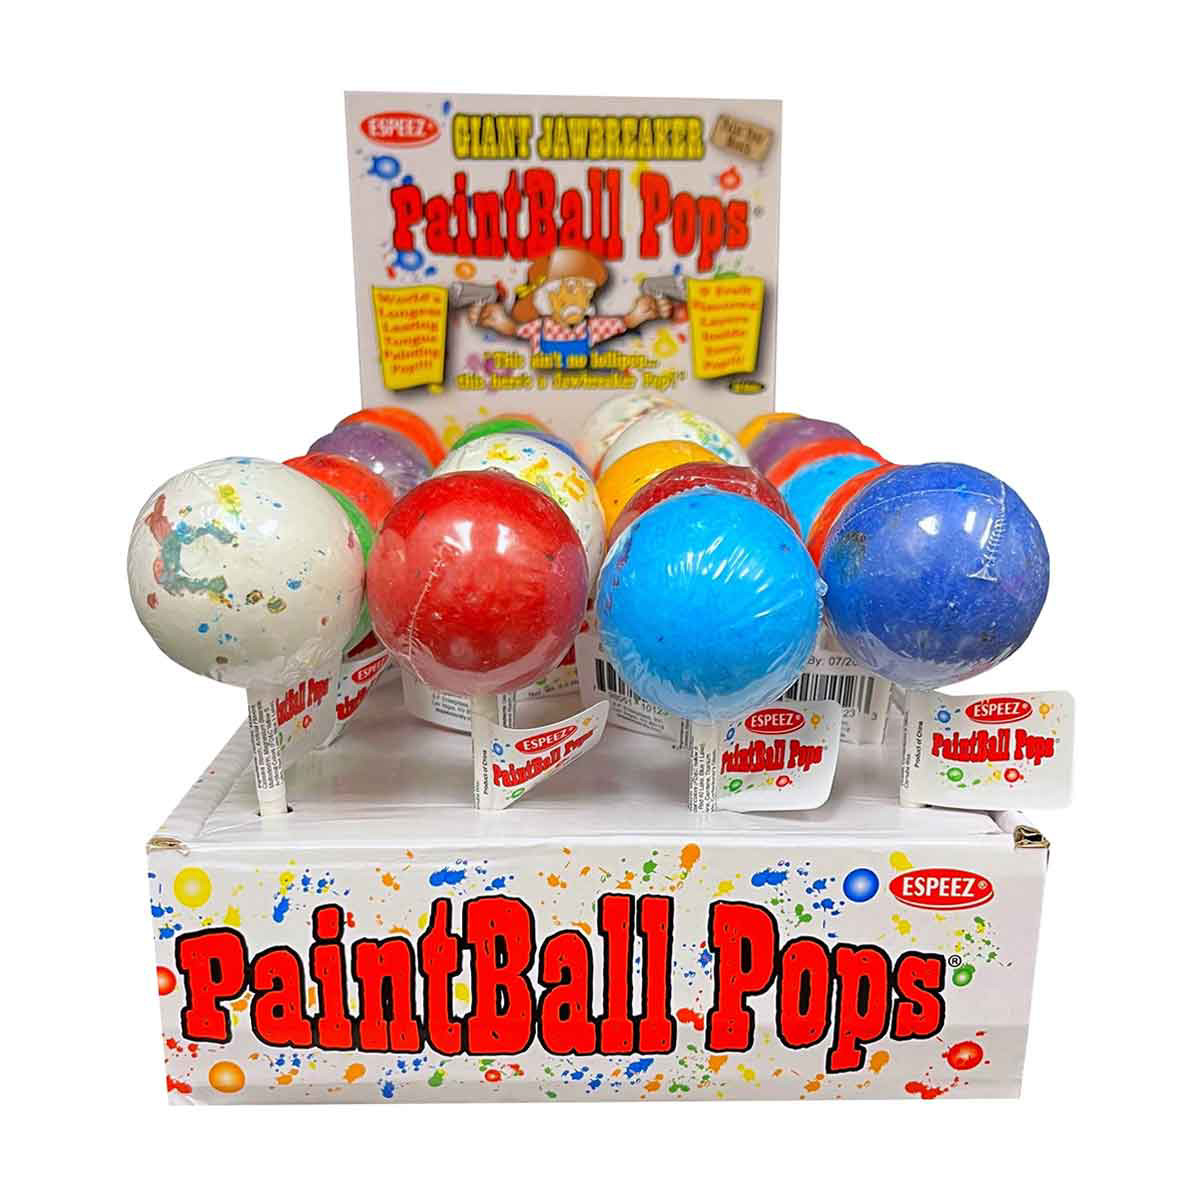 Espeez Giant Jawbreaker Paintball Pops